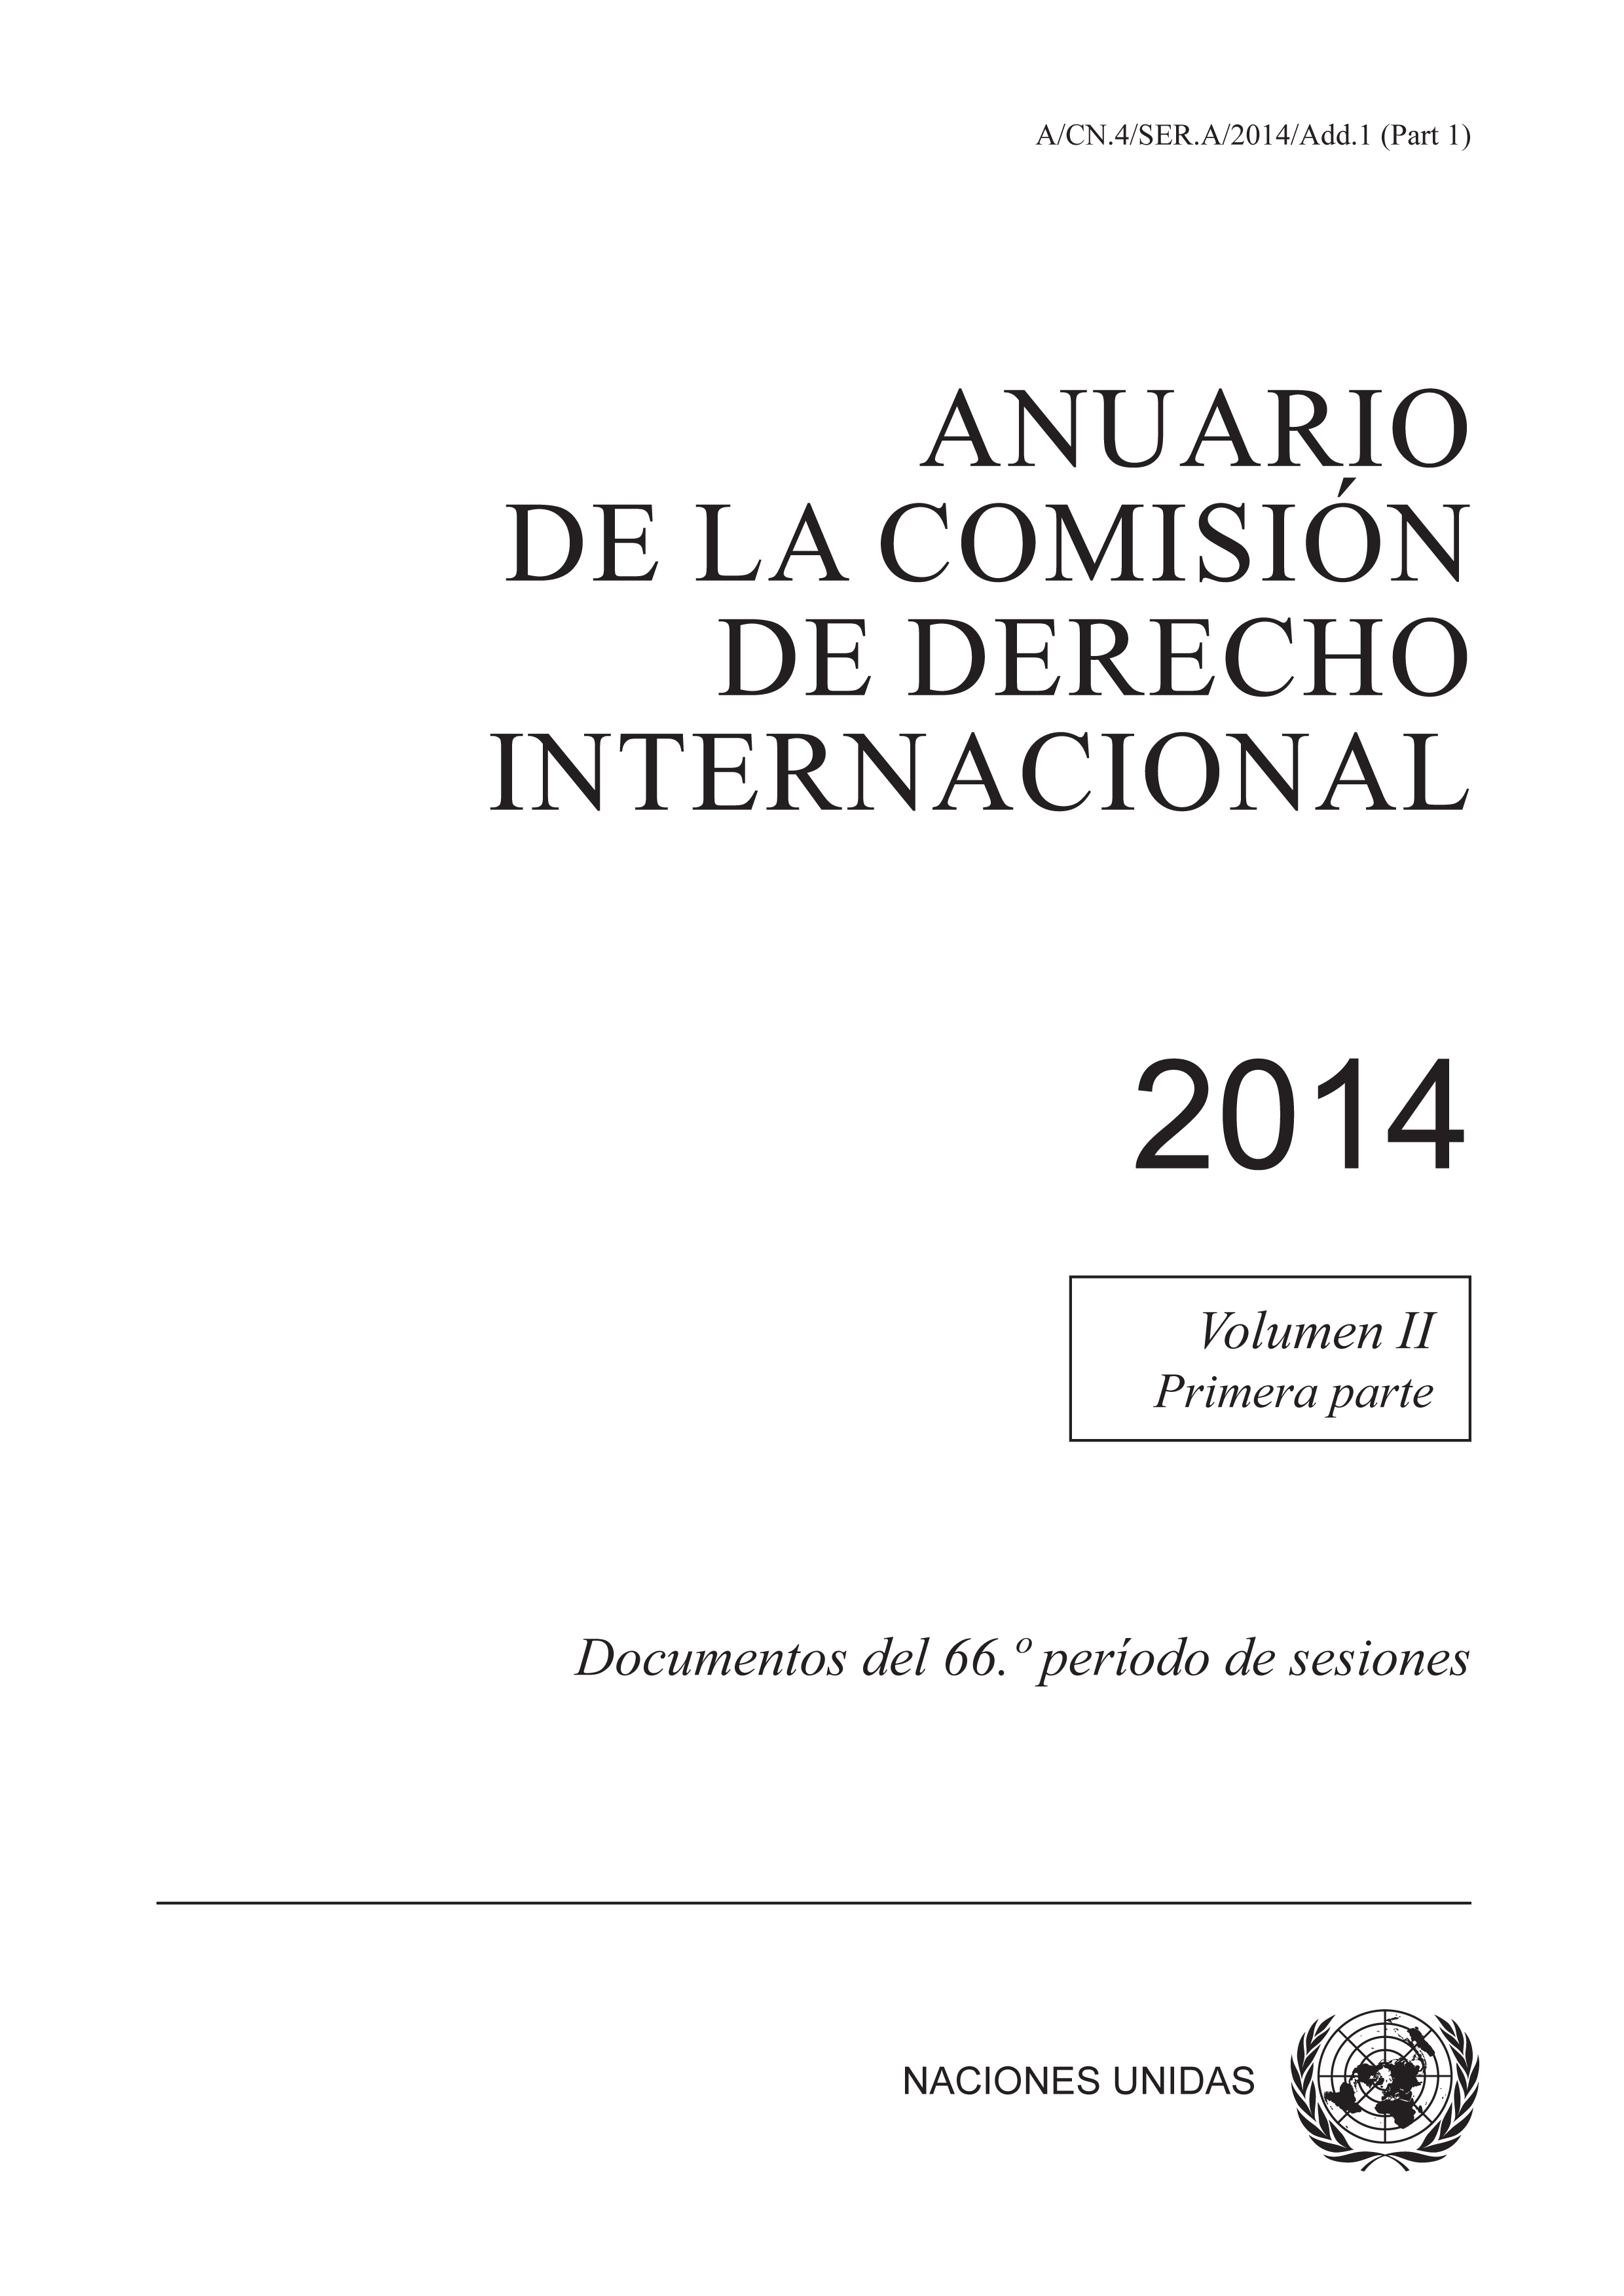 image of Anuario de la Comisión de Derecho Internacional 2014, Vol. II, Parte 1